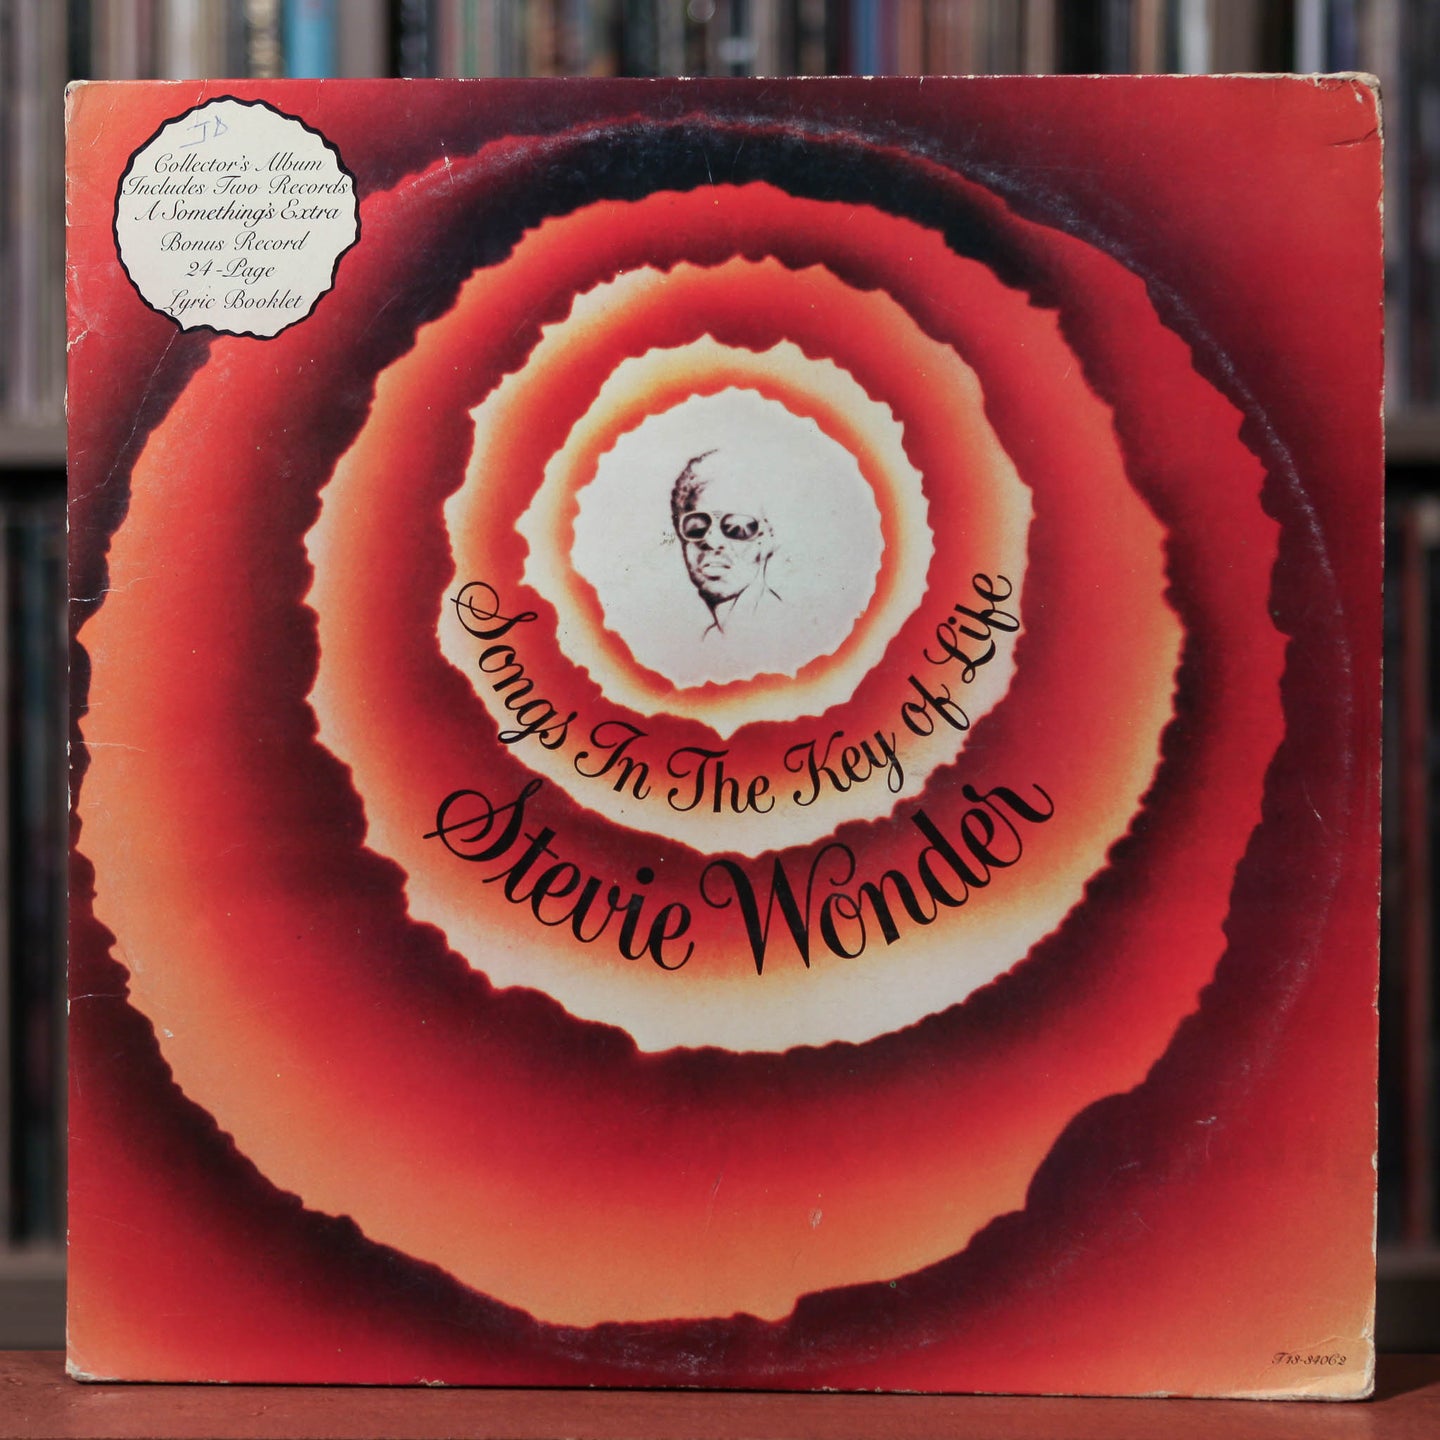 Stevie Wonder - Songs In The Key Of Life - 2LP - 1976 Tamla, VG/VG w/ 7